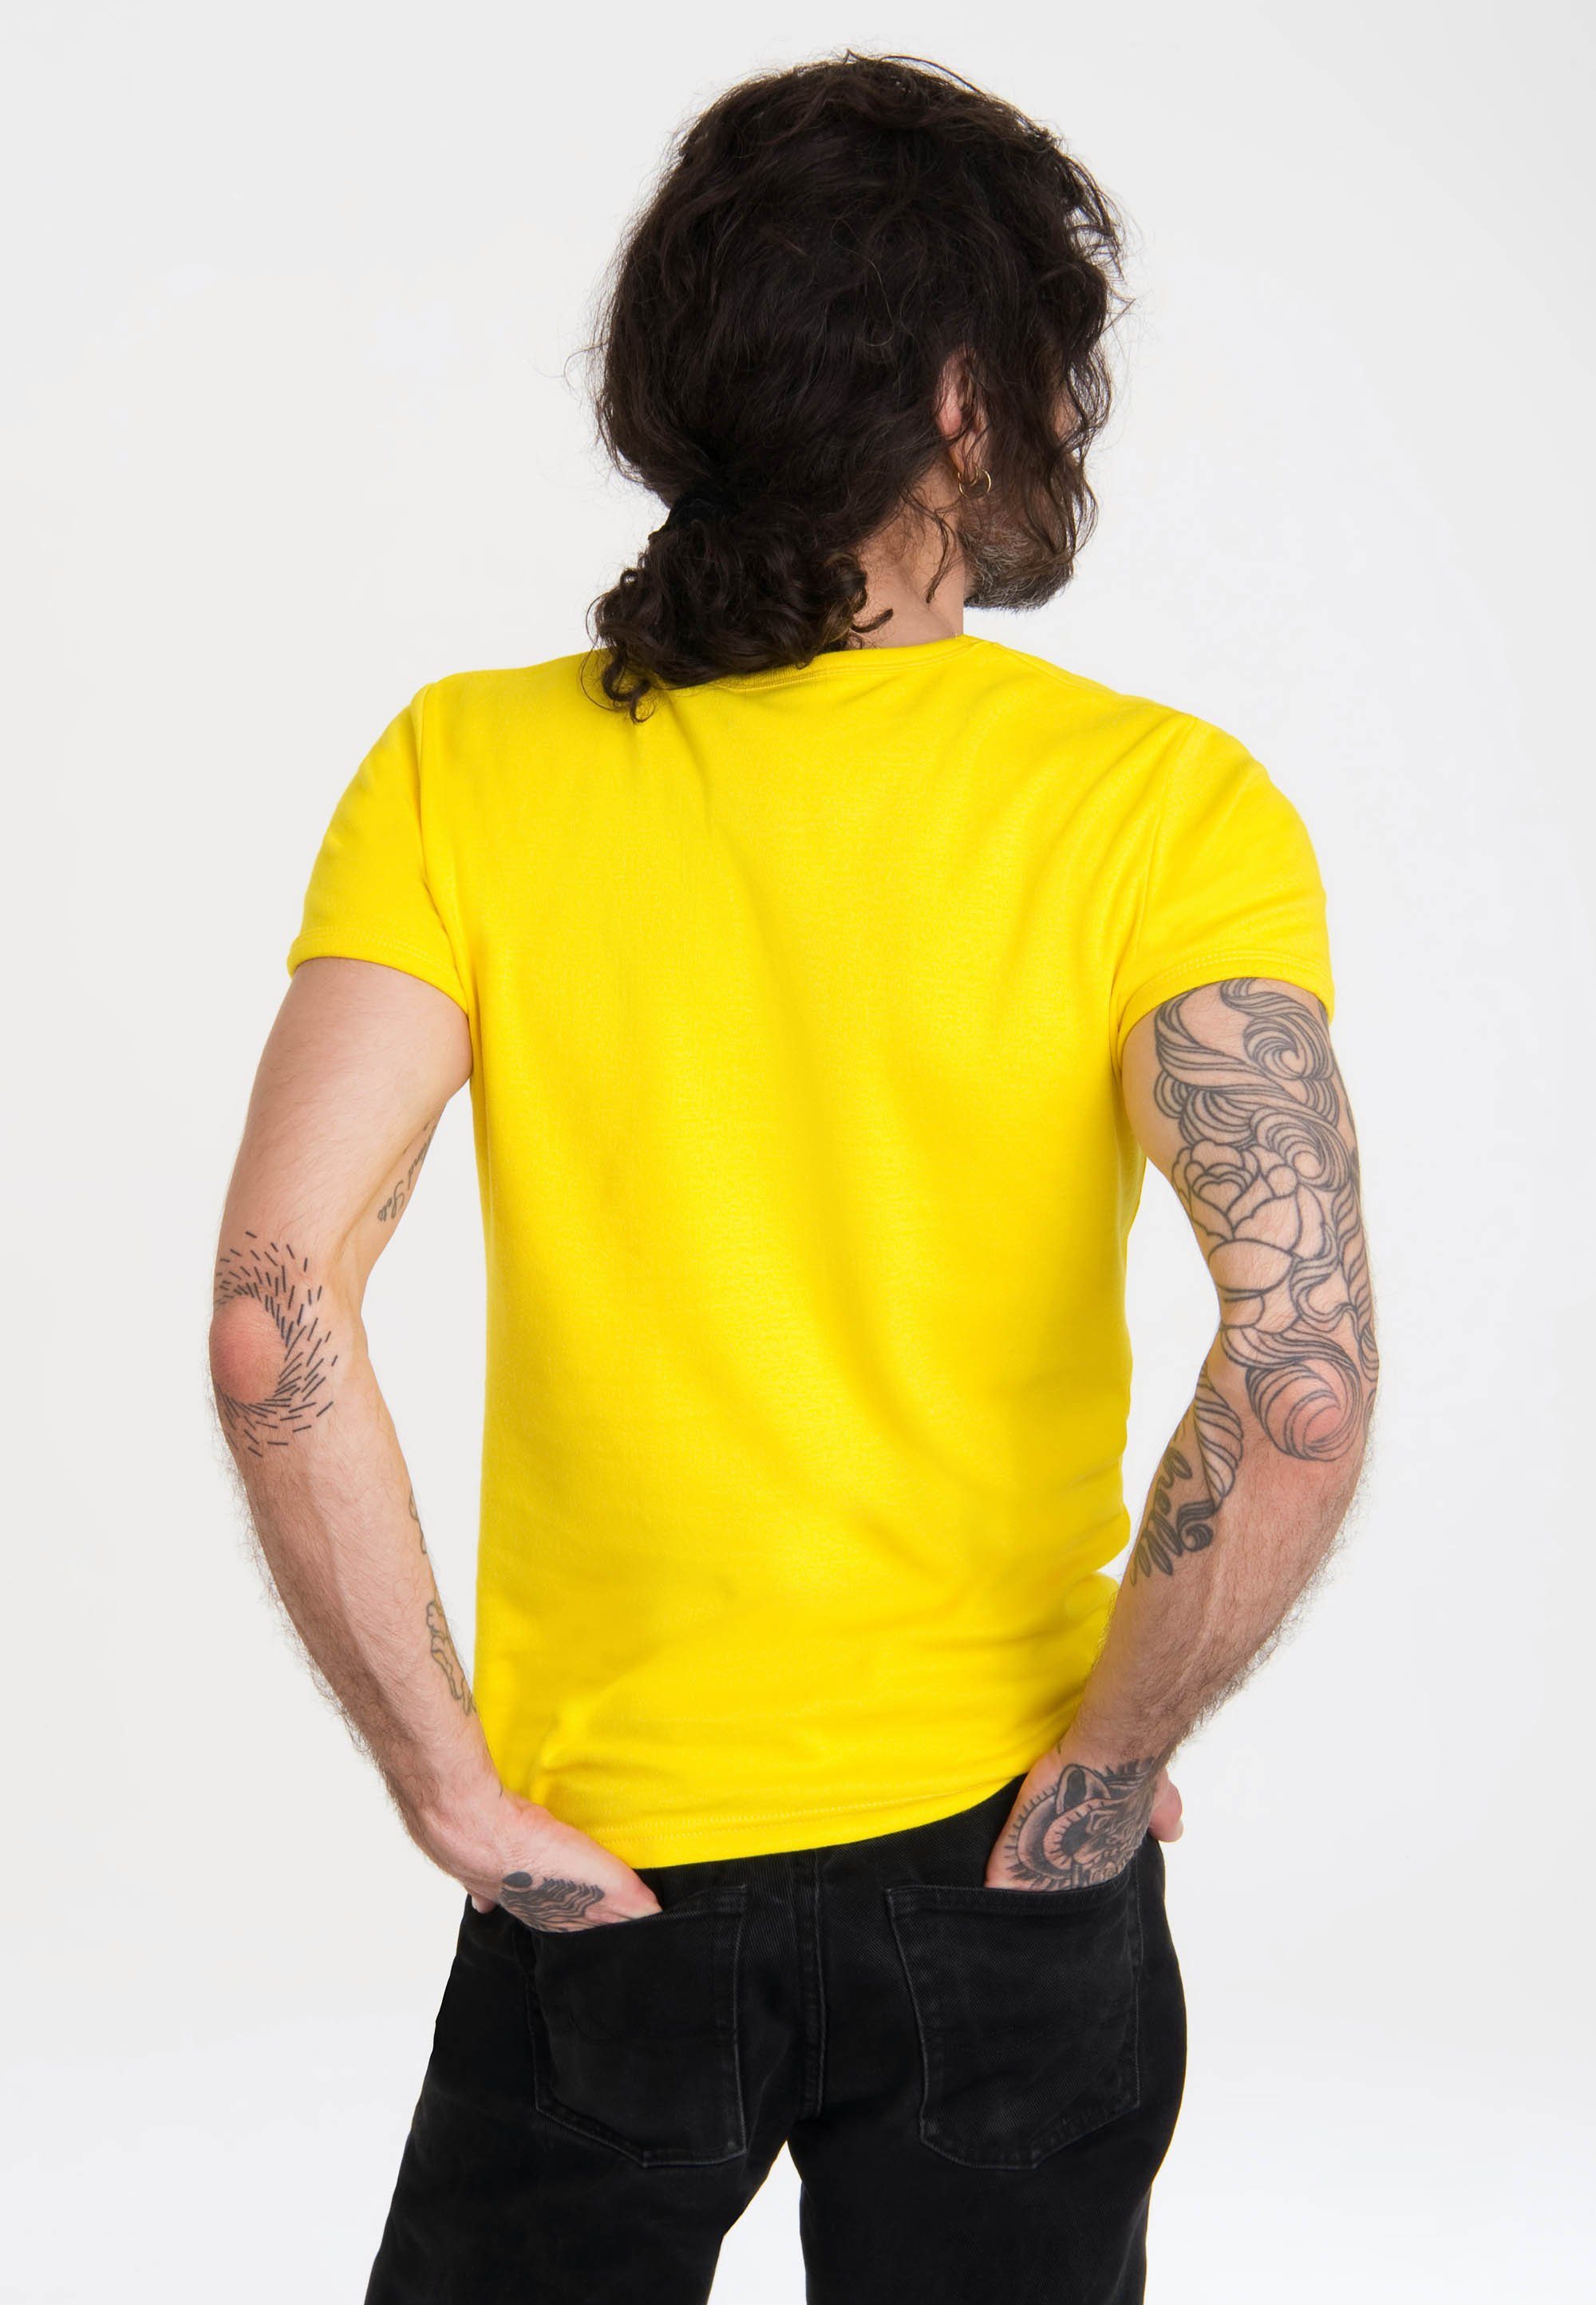 LOGOSHIRT T-Shirt gelb Print mit lizenziertem Krümelmonster Motorrad - Sesamstraße